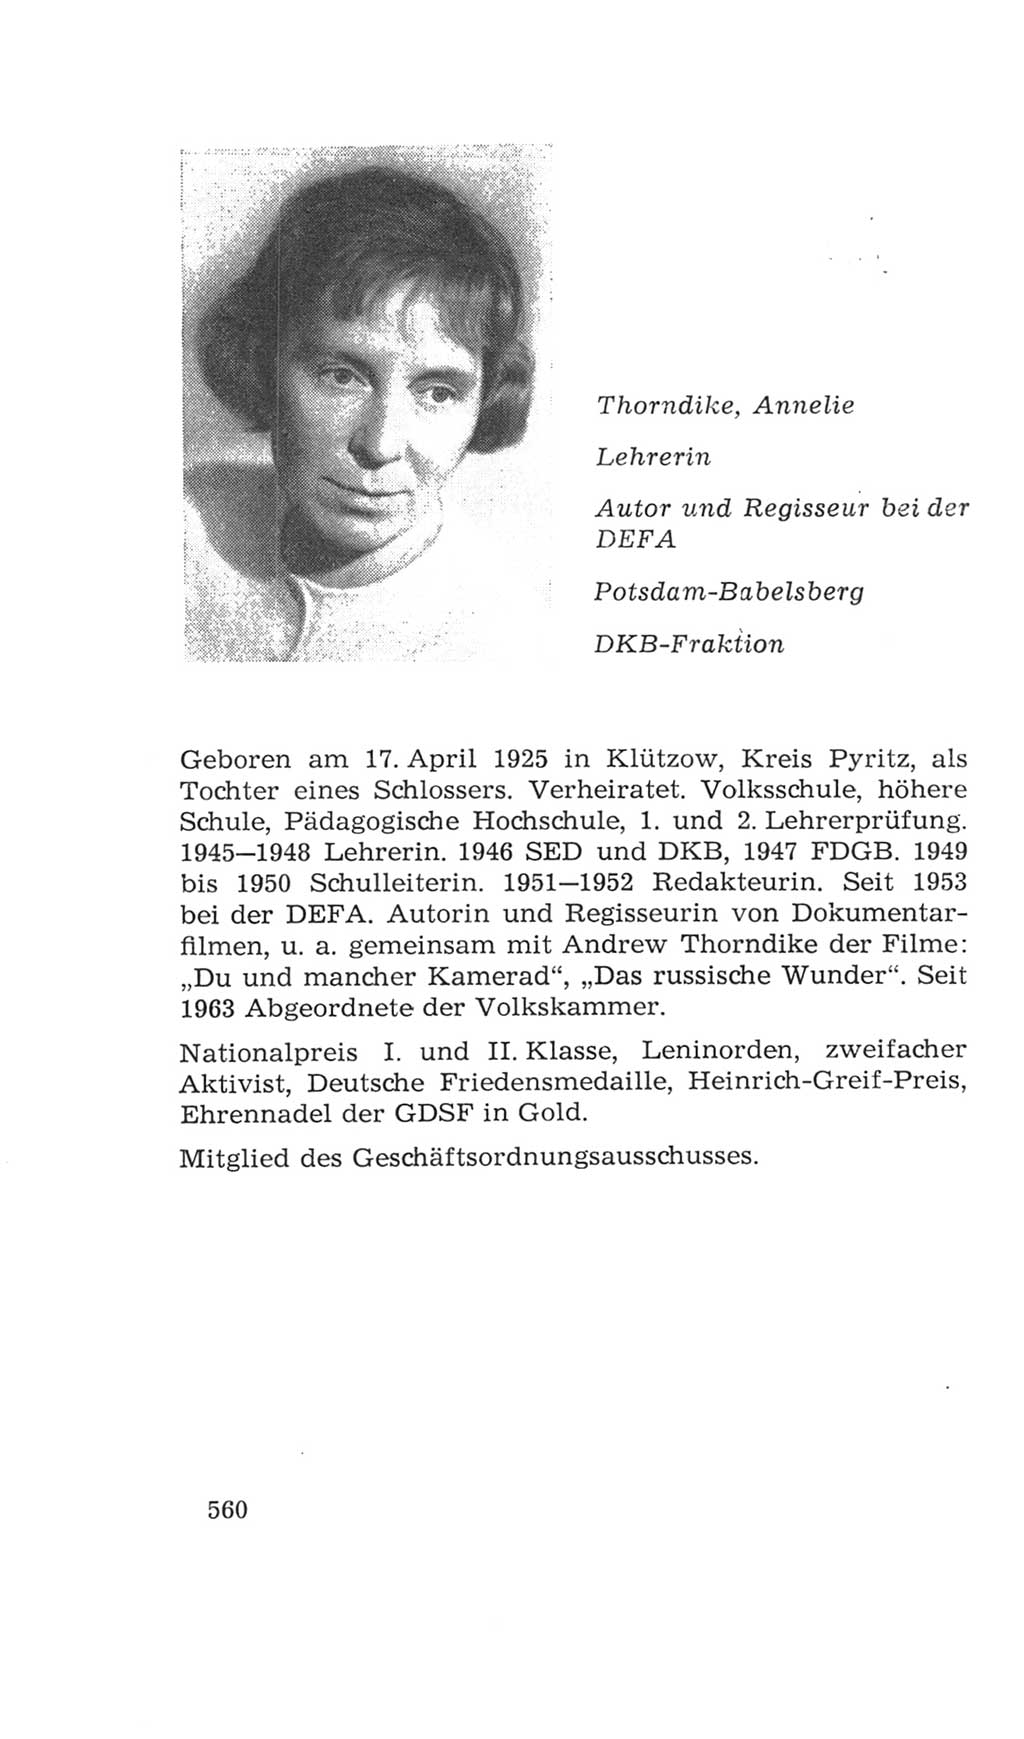 Volkskammer (VK) der Deutschen Demokratischen Republik (DDR), 4. Wahlperiode 1963-1967, Seite 560 (VK. DDR 4. WP. 1963-1967, S. 560)